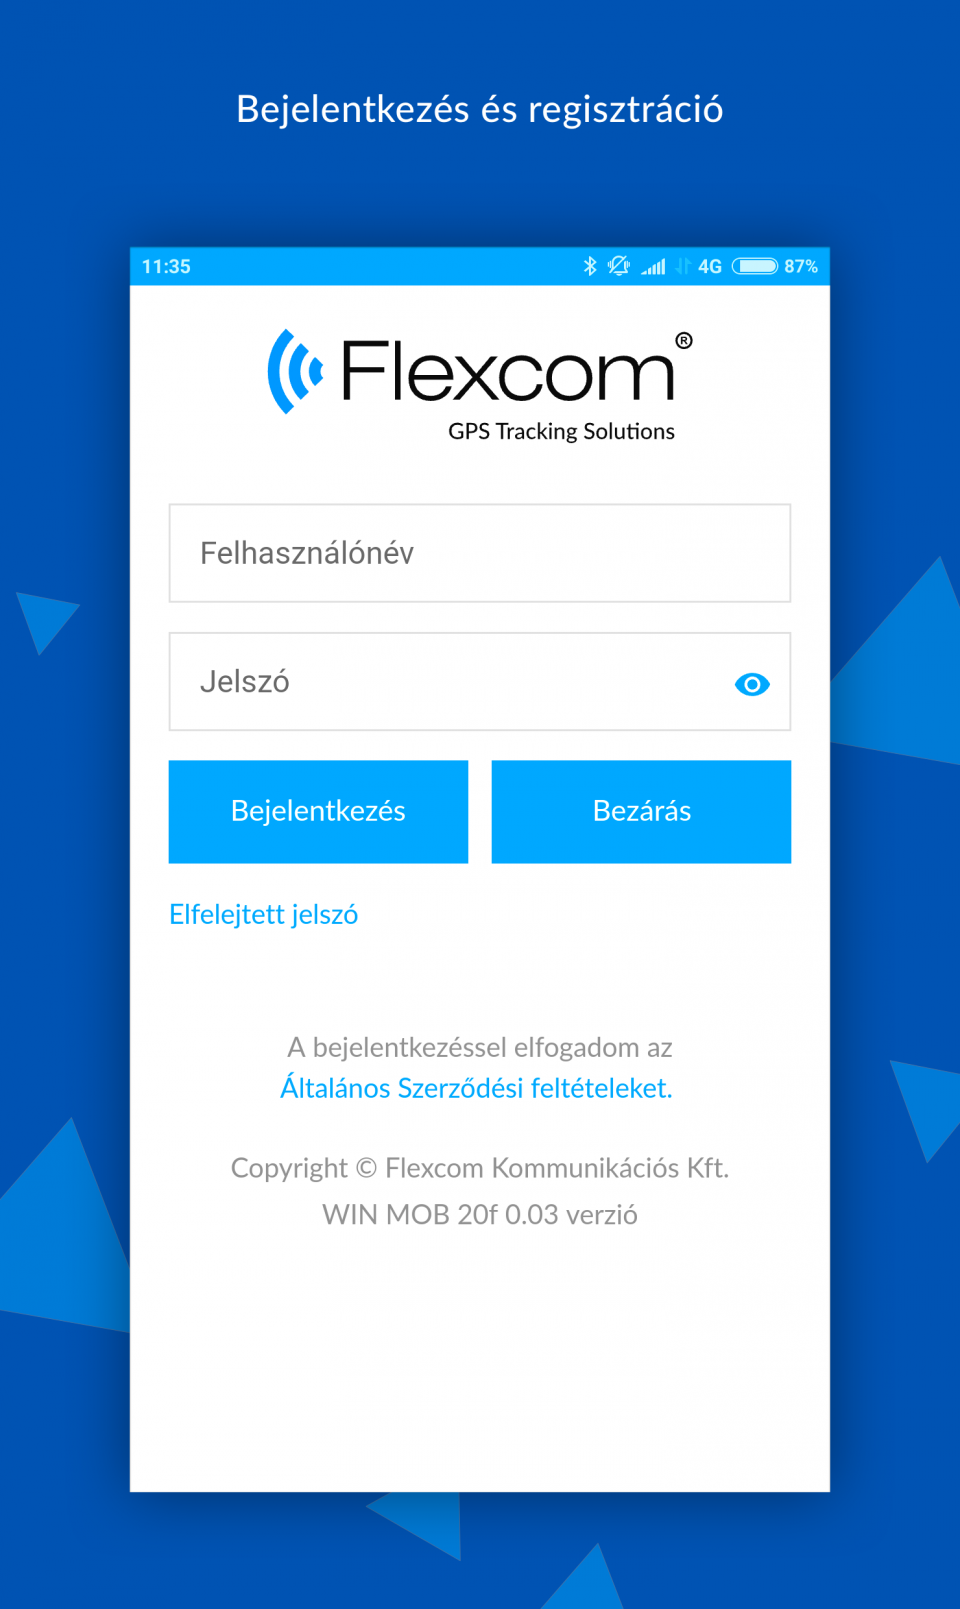  Flexcom Android Login  FLEXCOM nyomkövető szoftver licensz FP típusú raklap nyomkövetőkhöz